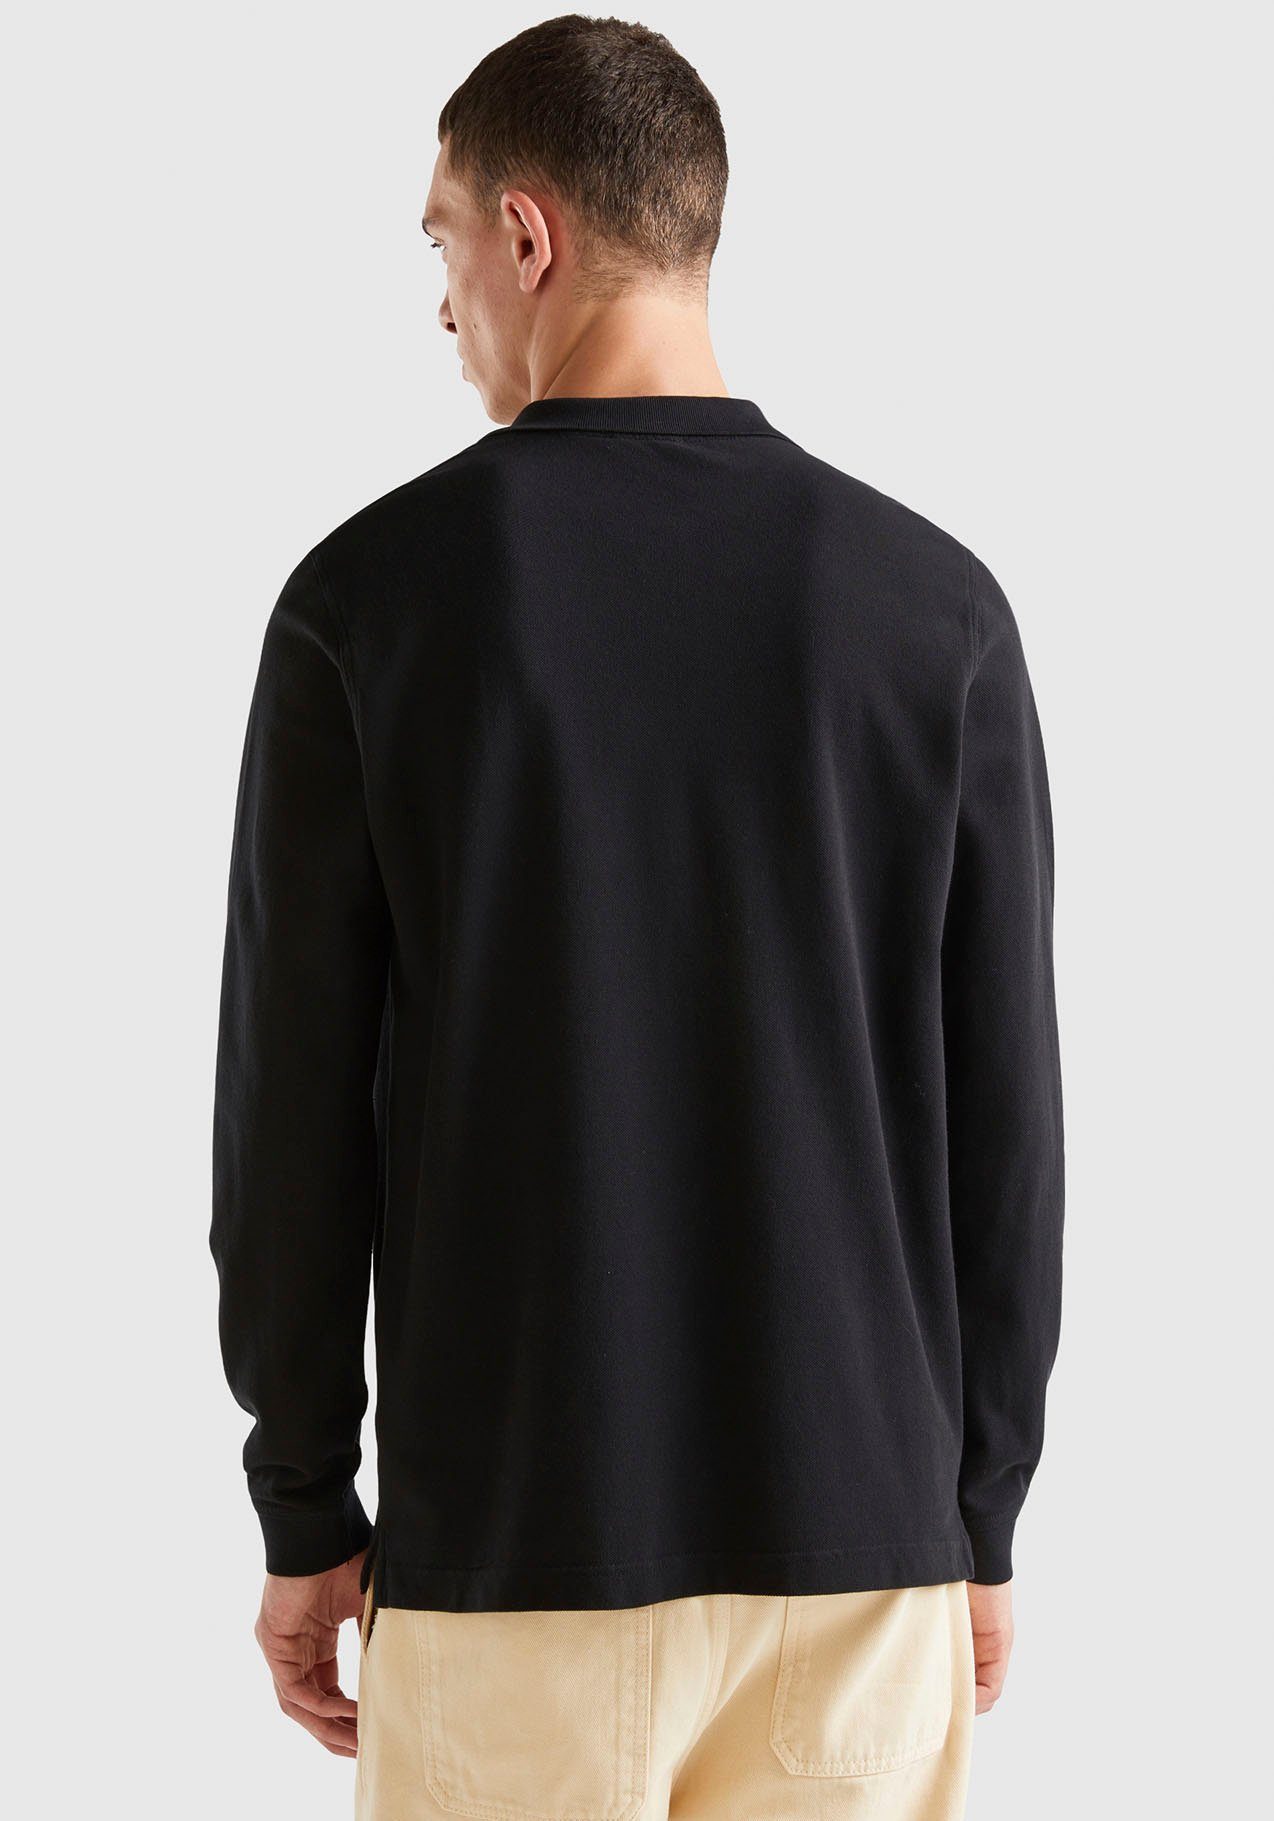 United Colors of Benetton Langarm-Poloshirt seitlichen, kleinen Schlitzen mit schwarz